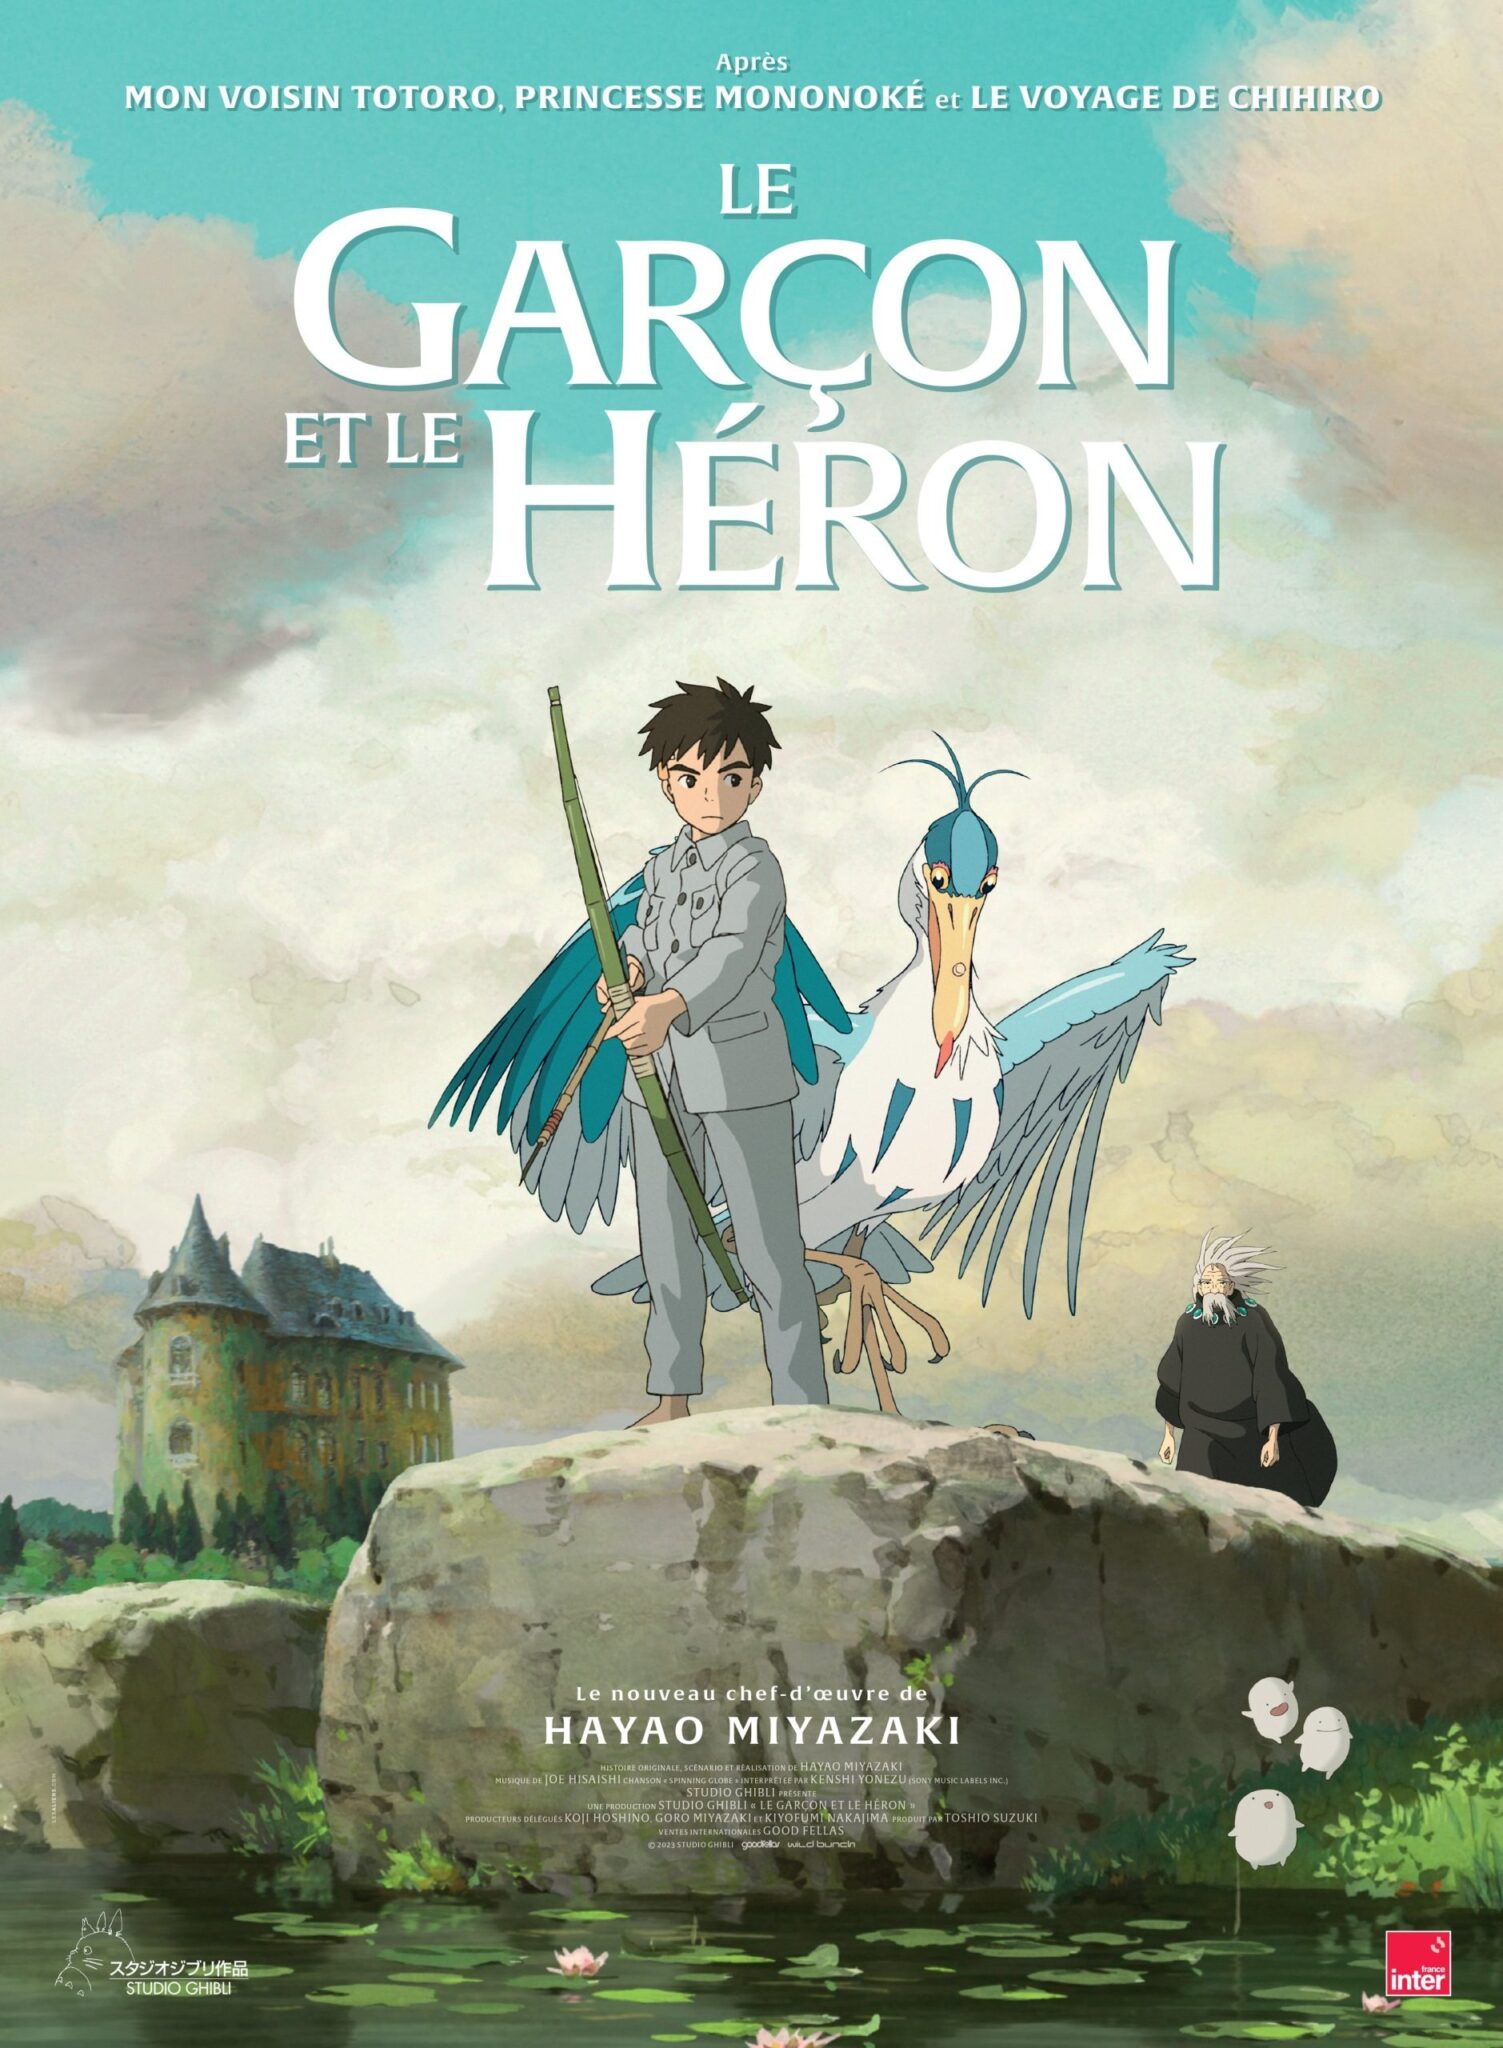 مشاهدة فيلم The Boy and the Heron مترجم كامل بجودة عالية HD وي سيما ايجي ديد